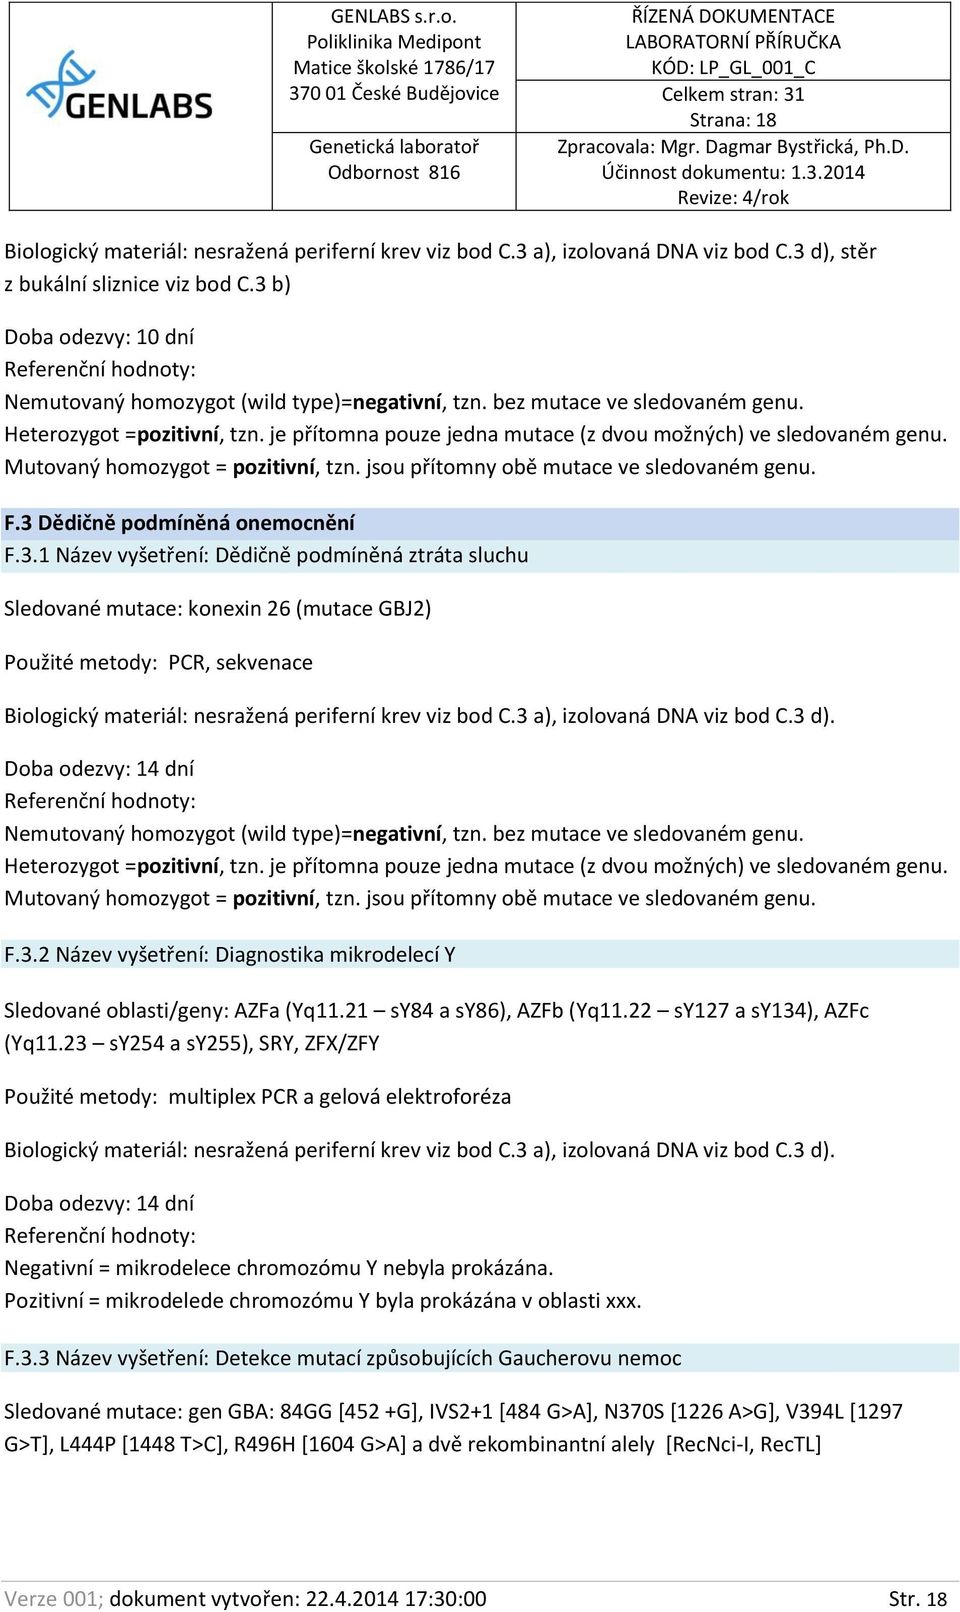 3.2 Název vyšetření: Diagnostika mikrodelecí Y Sledované oblasti/geny: AZFa (Yq11.21 sy84 a sy86), AZFb (Yq11.22 sy127 a sy134), AZFc (Yq11.